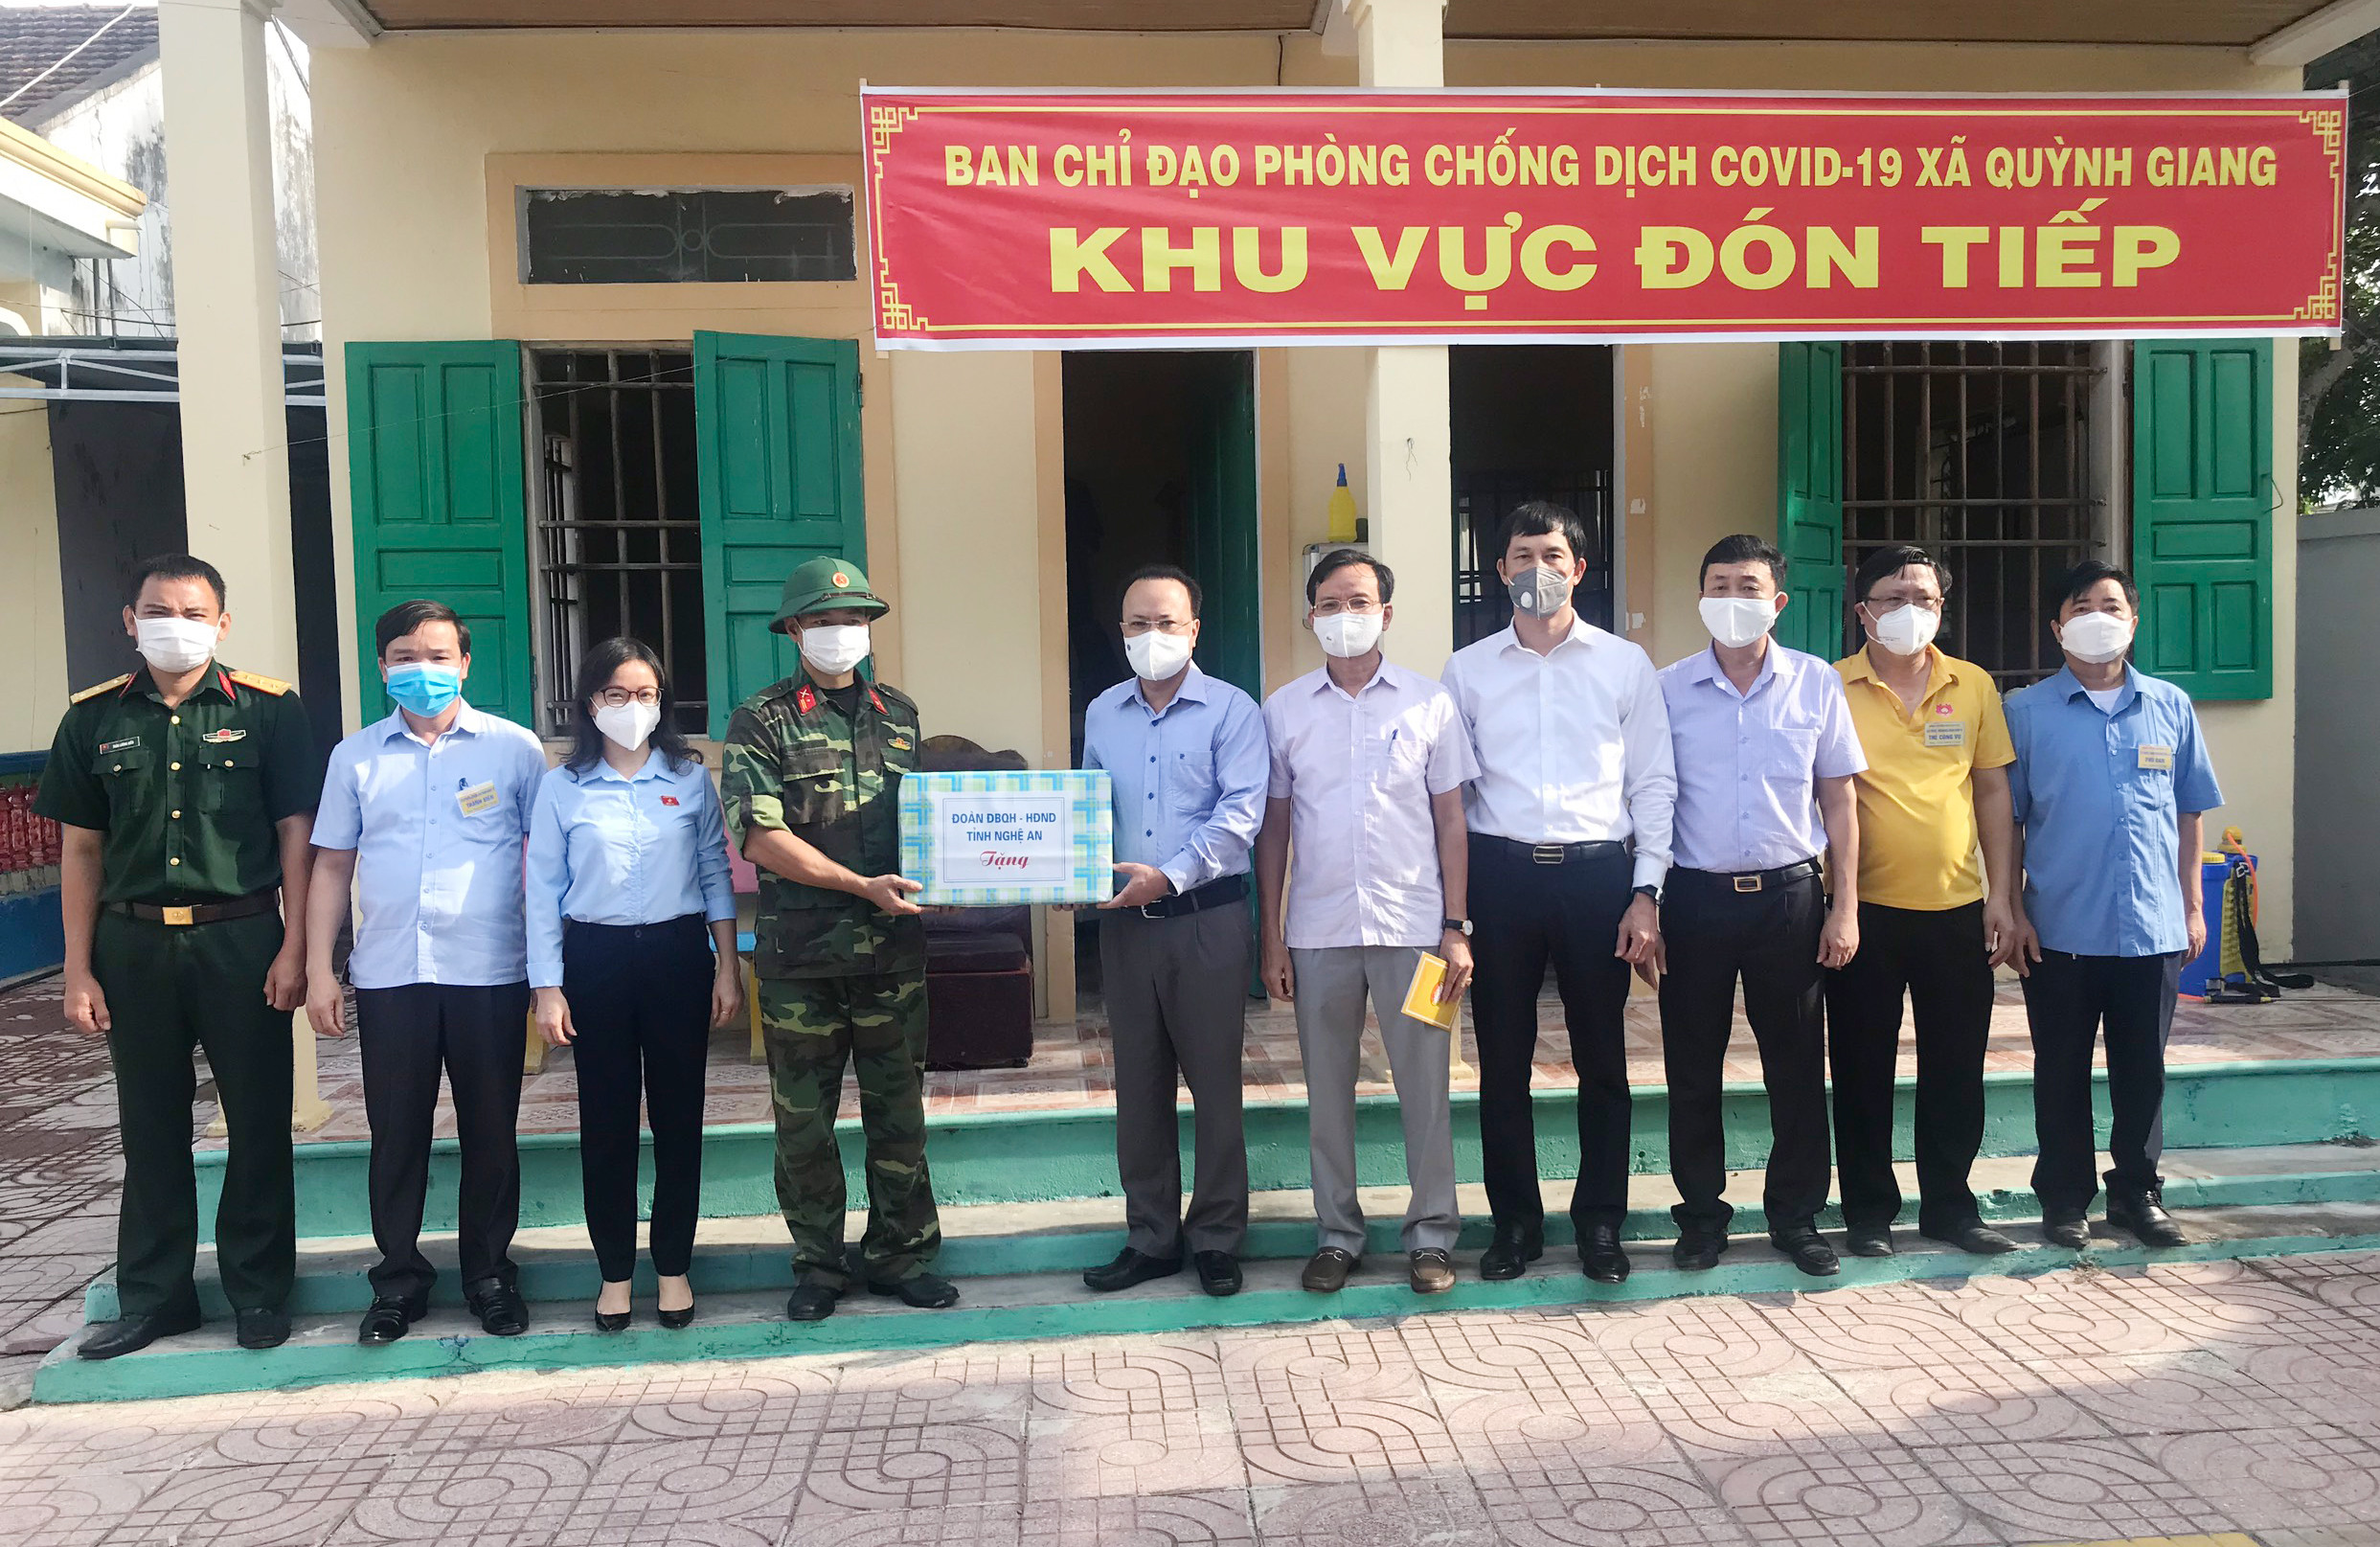 Đoàn công tác của Văn phòng Quốc hội- HDND tỉnh trao tặng quà cho lực lực trực tại chốt Quỳnh Giang. Ảnh: Thanh Lê